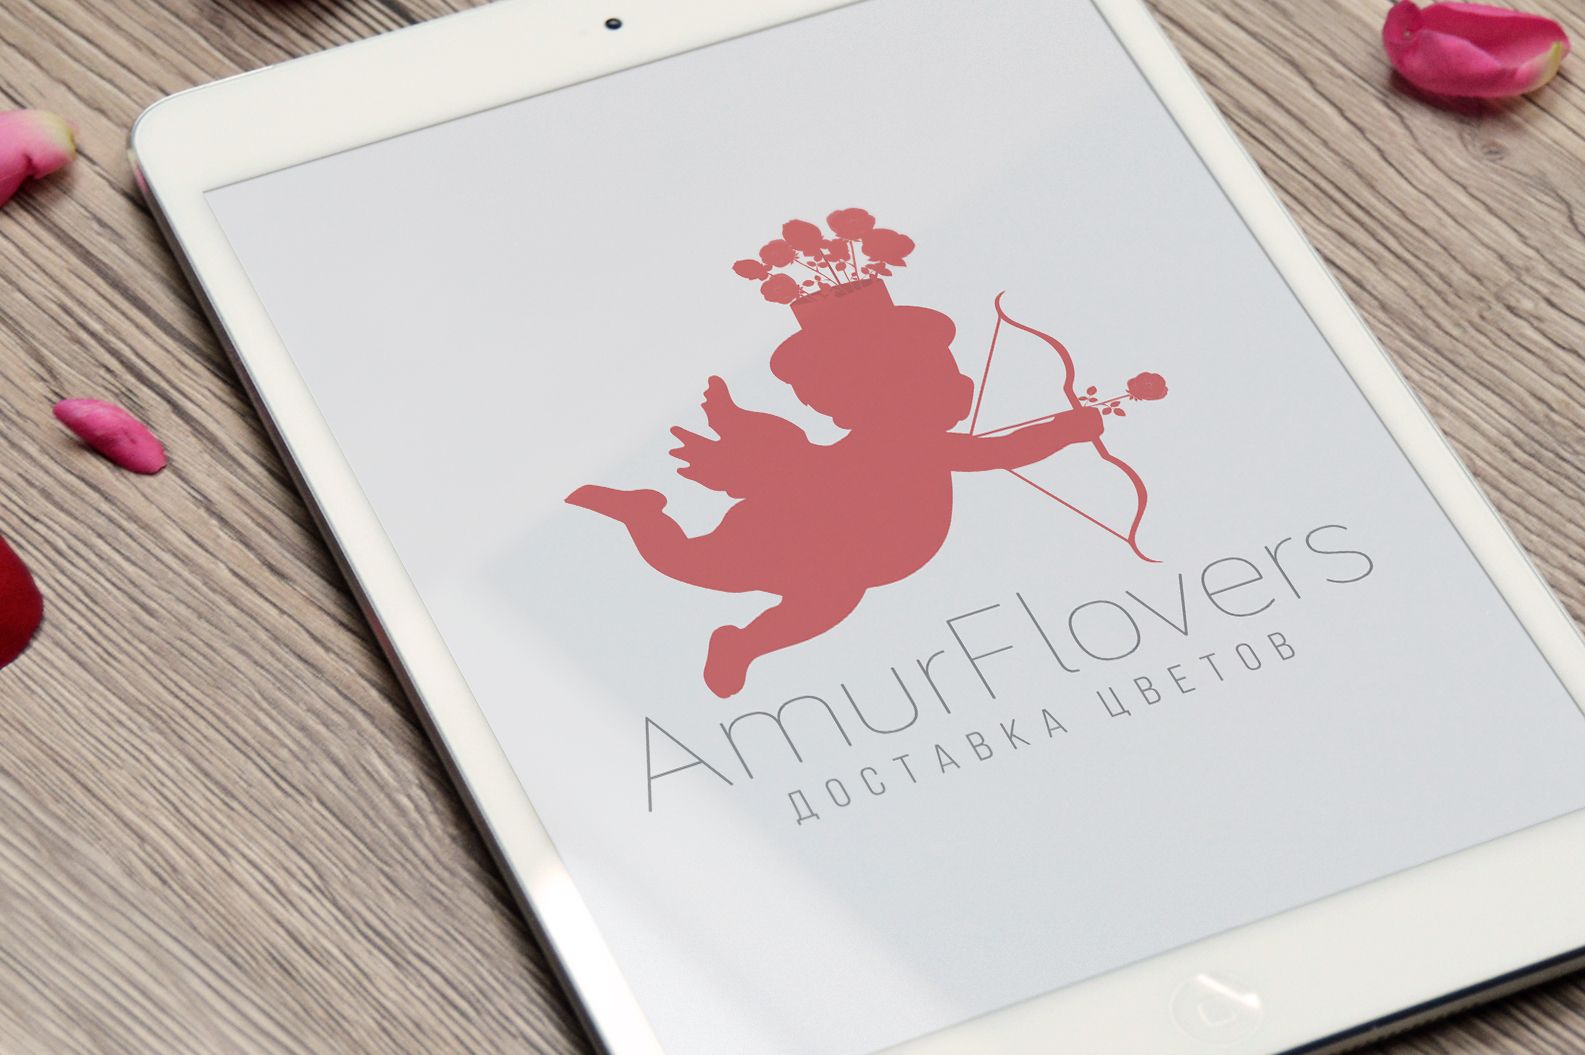 Логотип для AMUR, AMUR Flovers - дизайнер Permskih